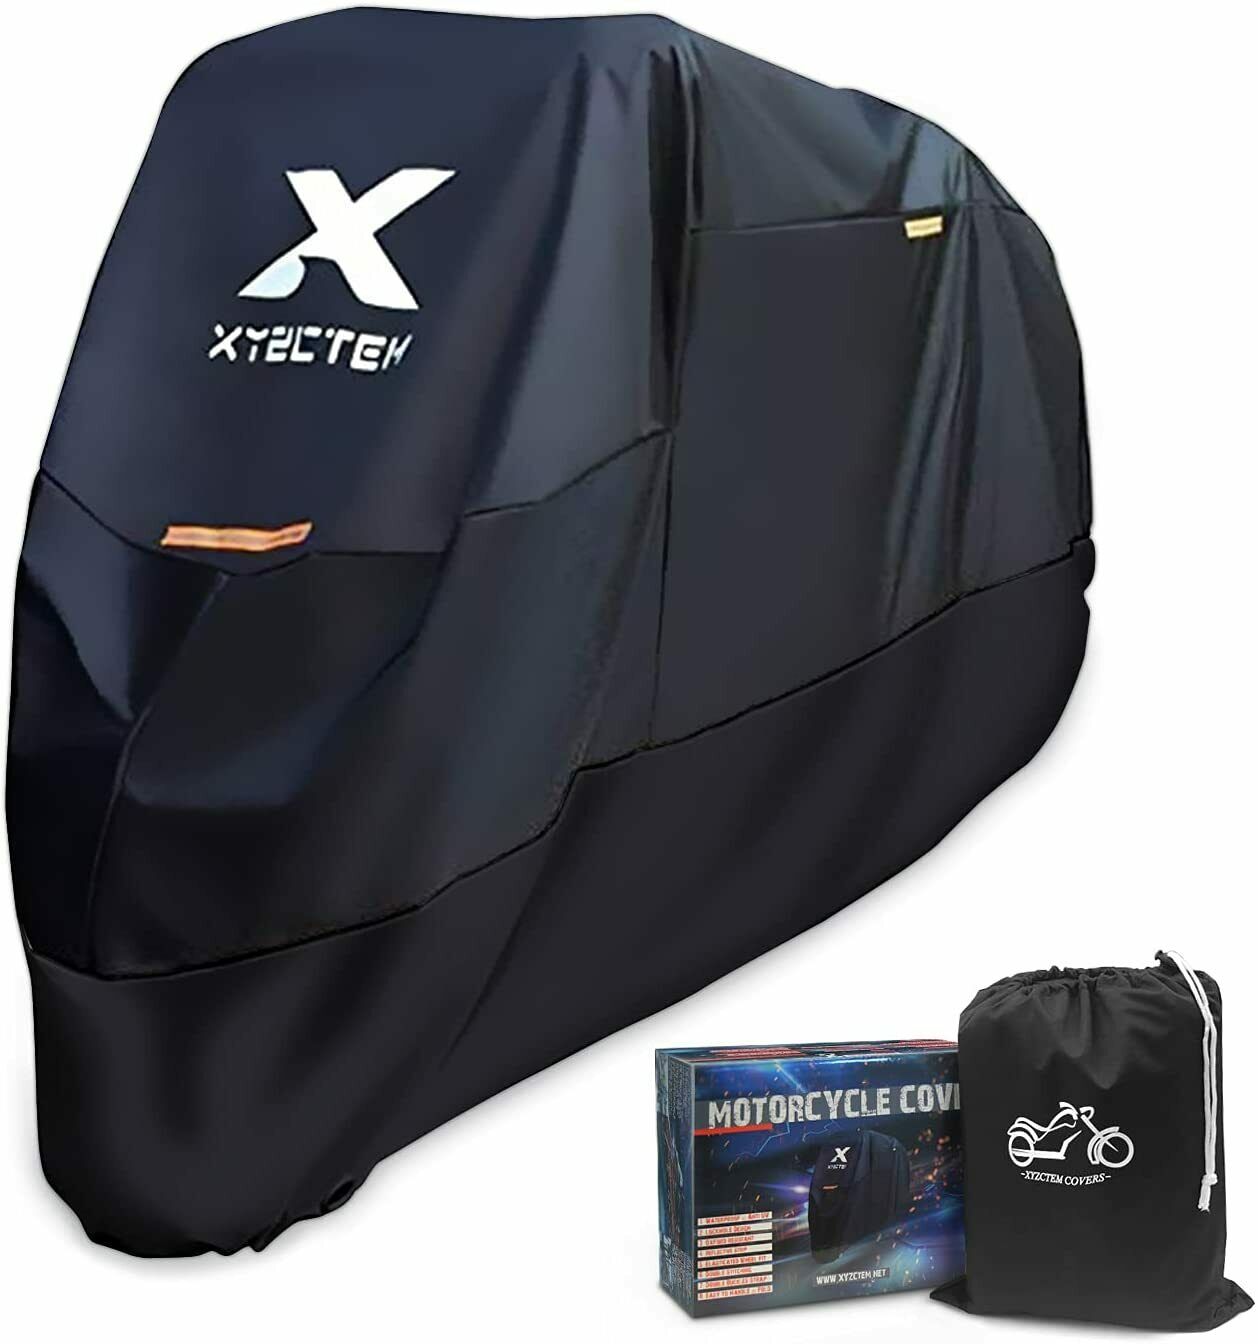 108 Inch Xxl Motorcycle Cover Outdoor Waterproof Storage Bag Black & Lockholes